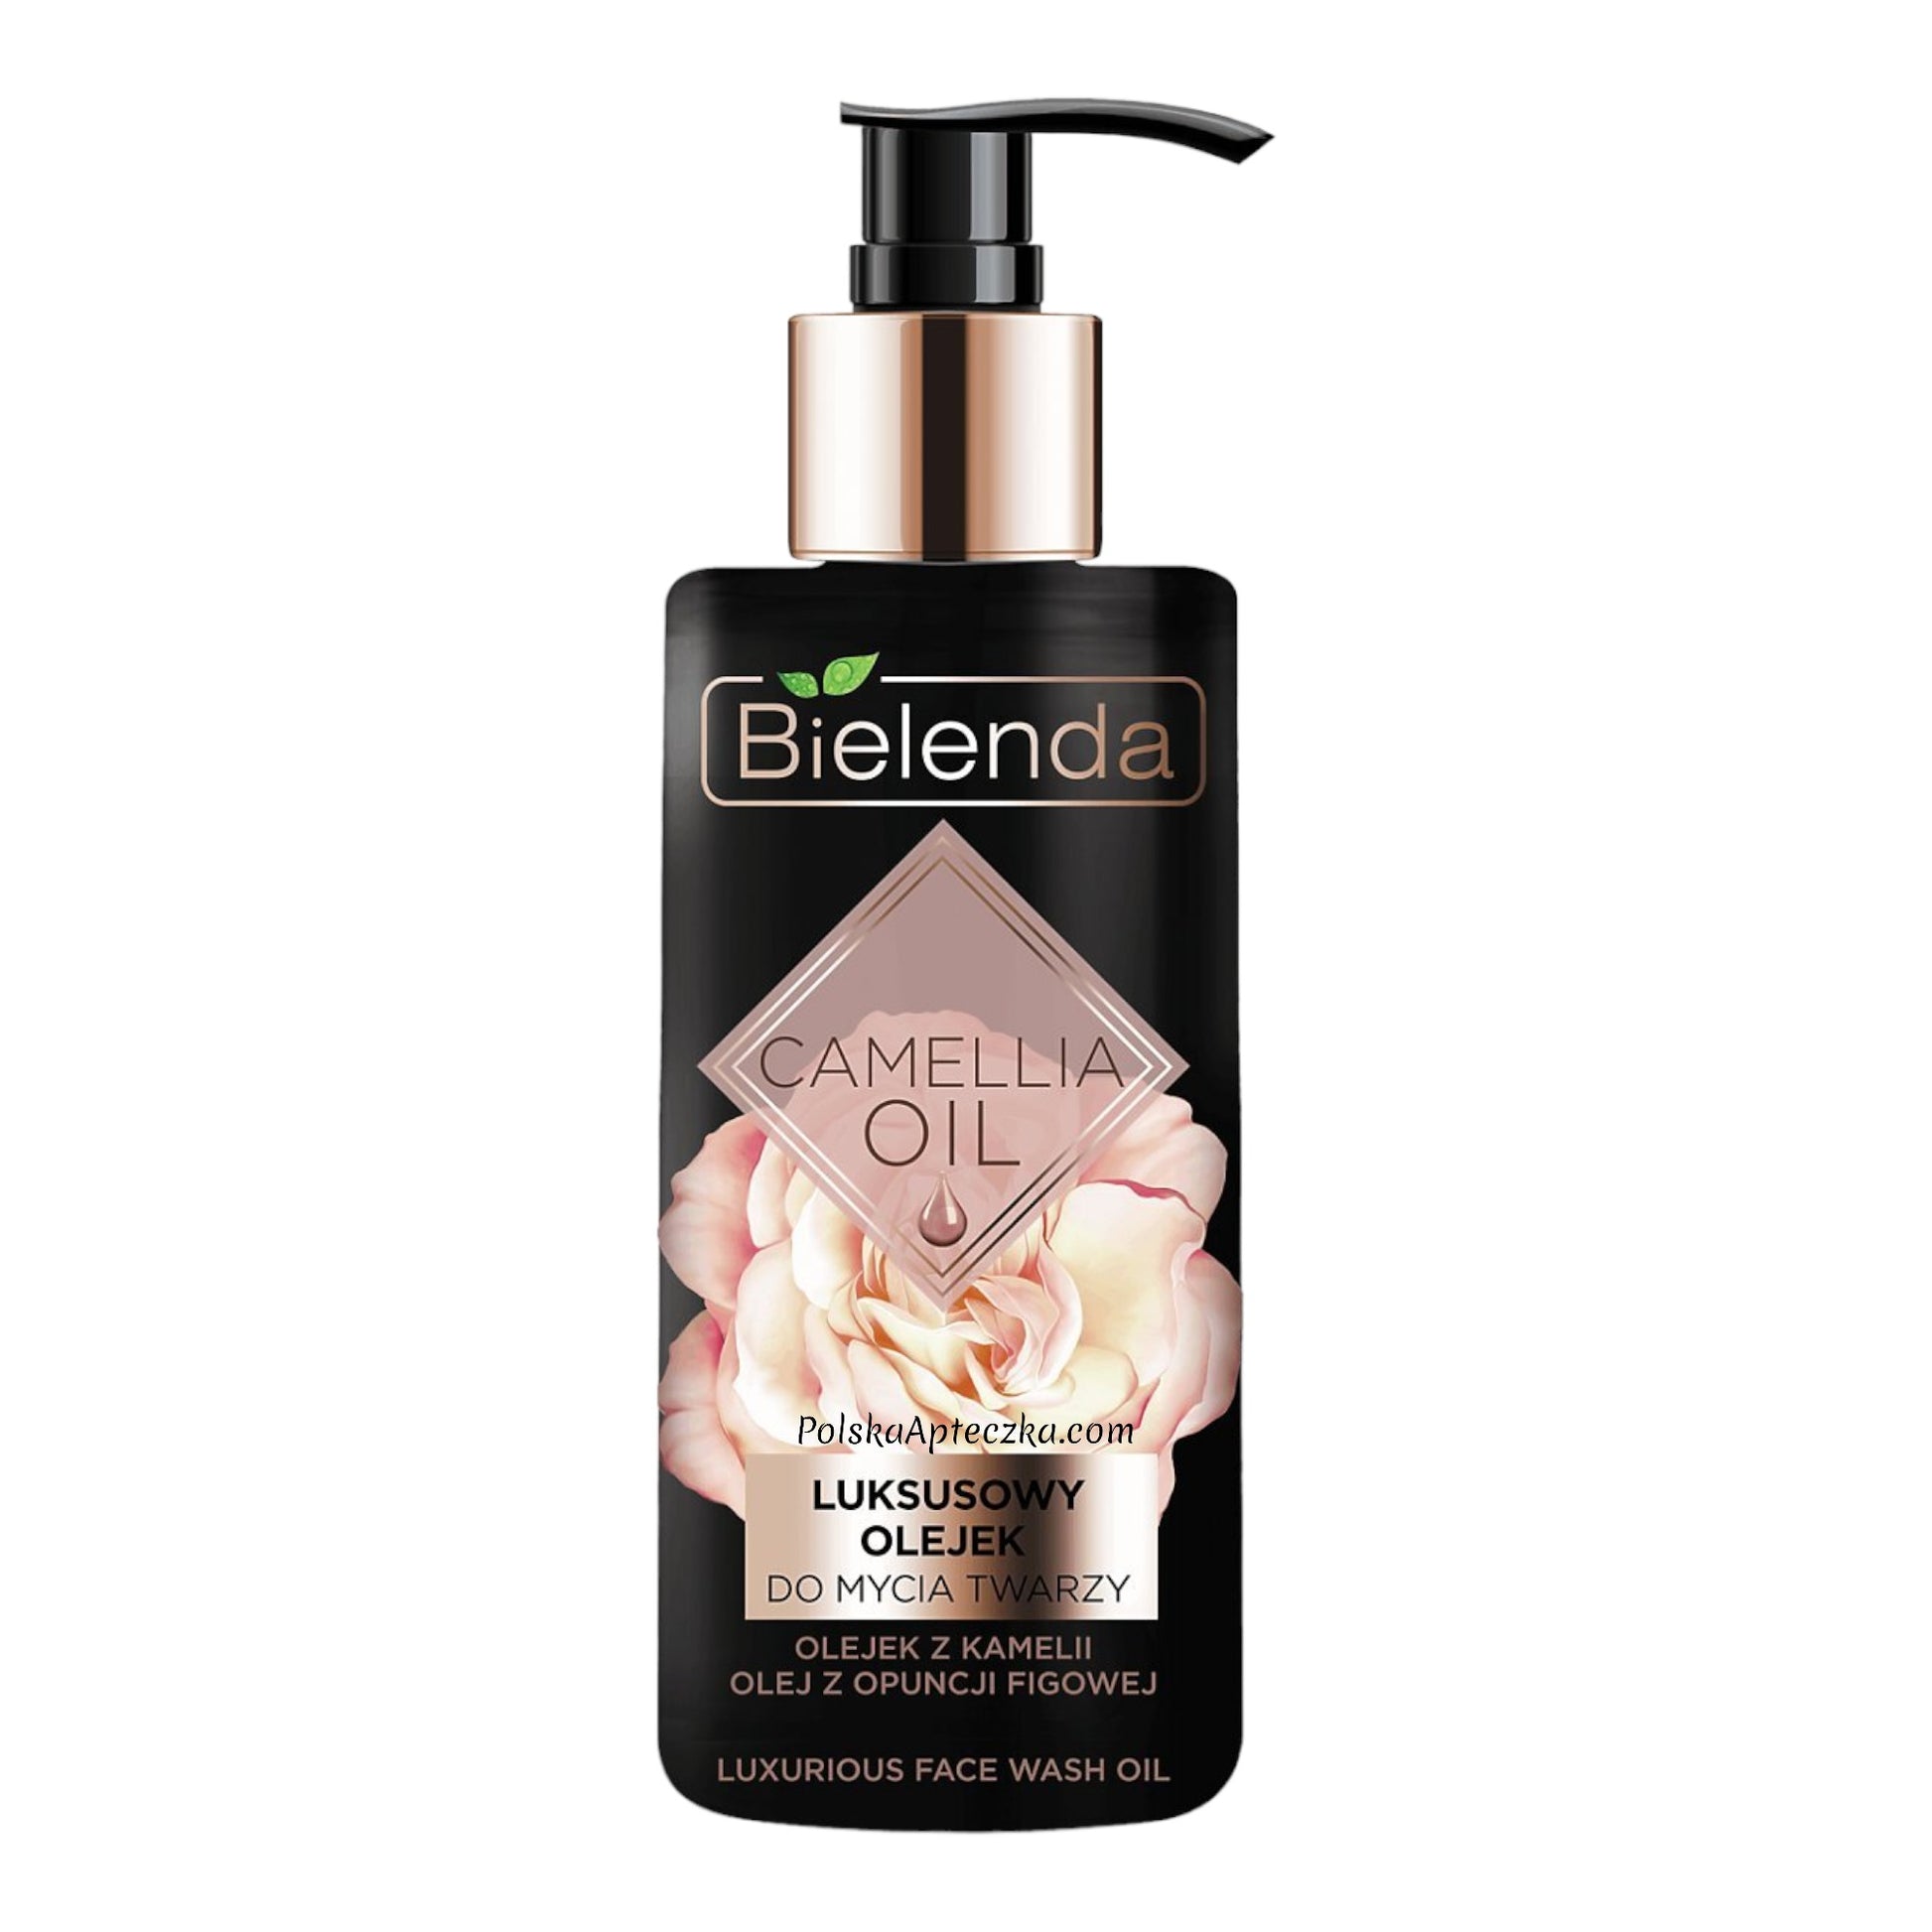 Bielenda, Camellia Oil Luksusowy olejek do mycia twarzy 140ml